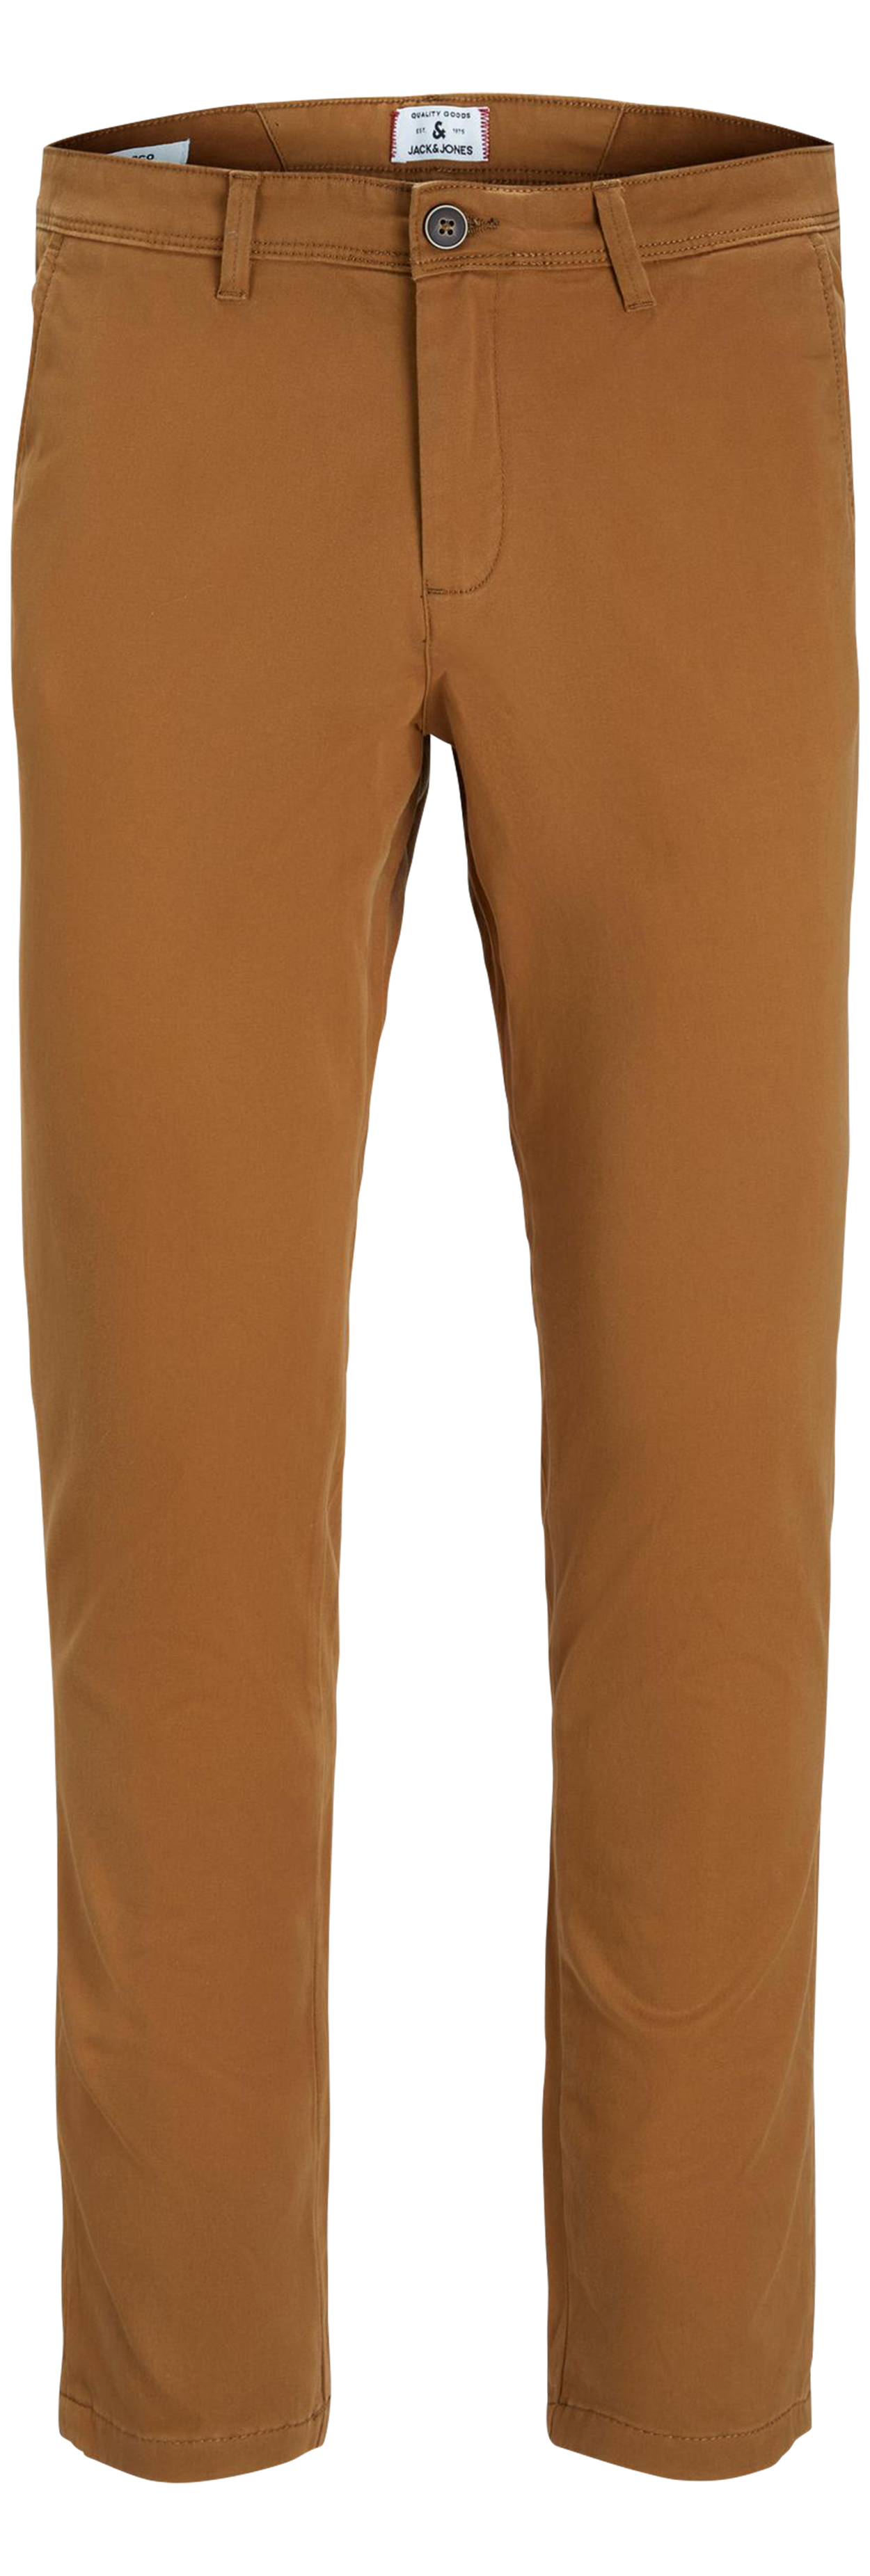 Pantalon Premium Marco Bowie en coton camel